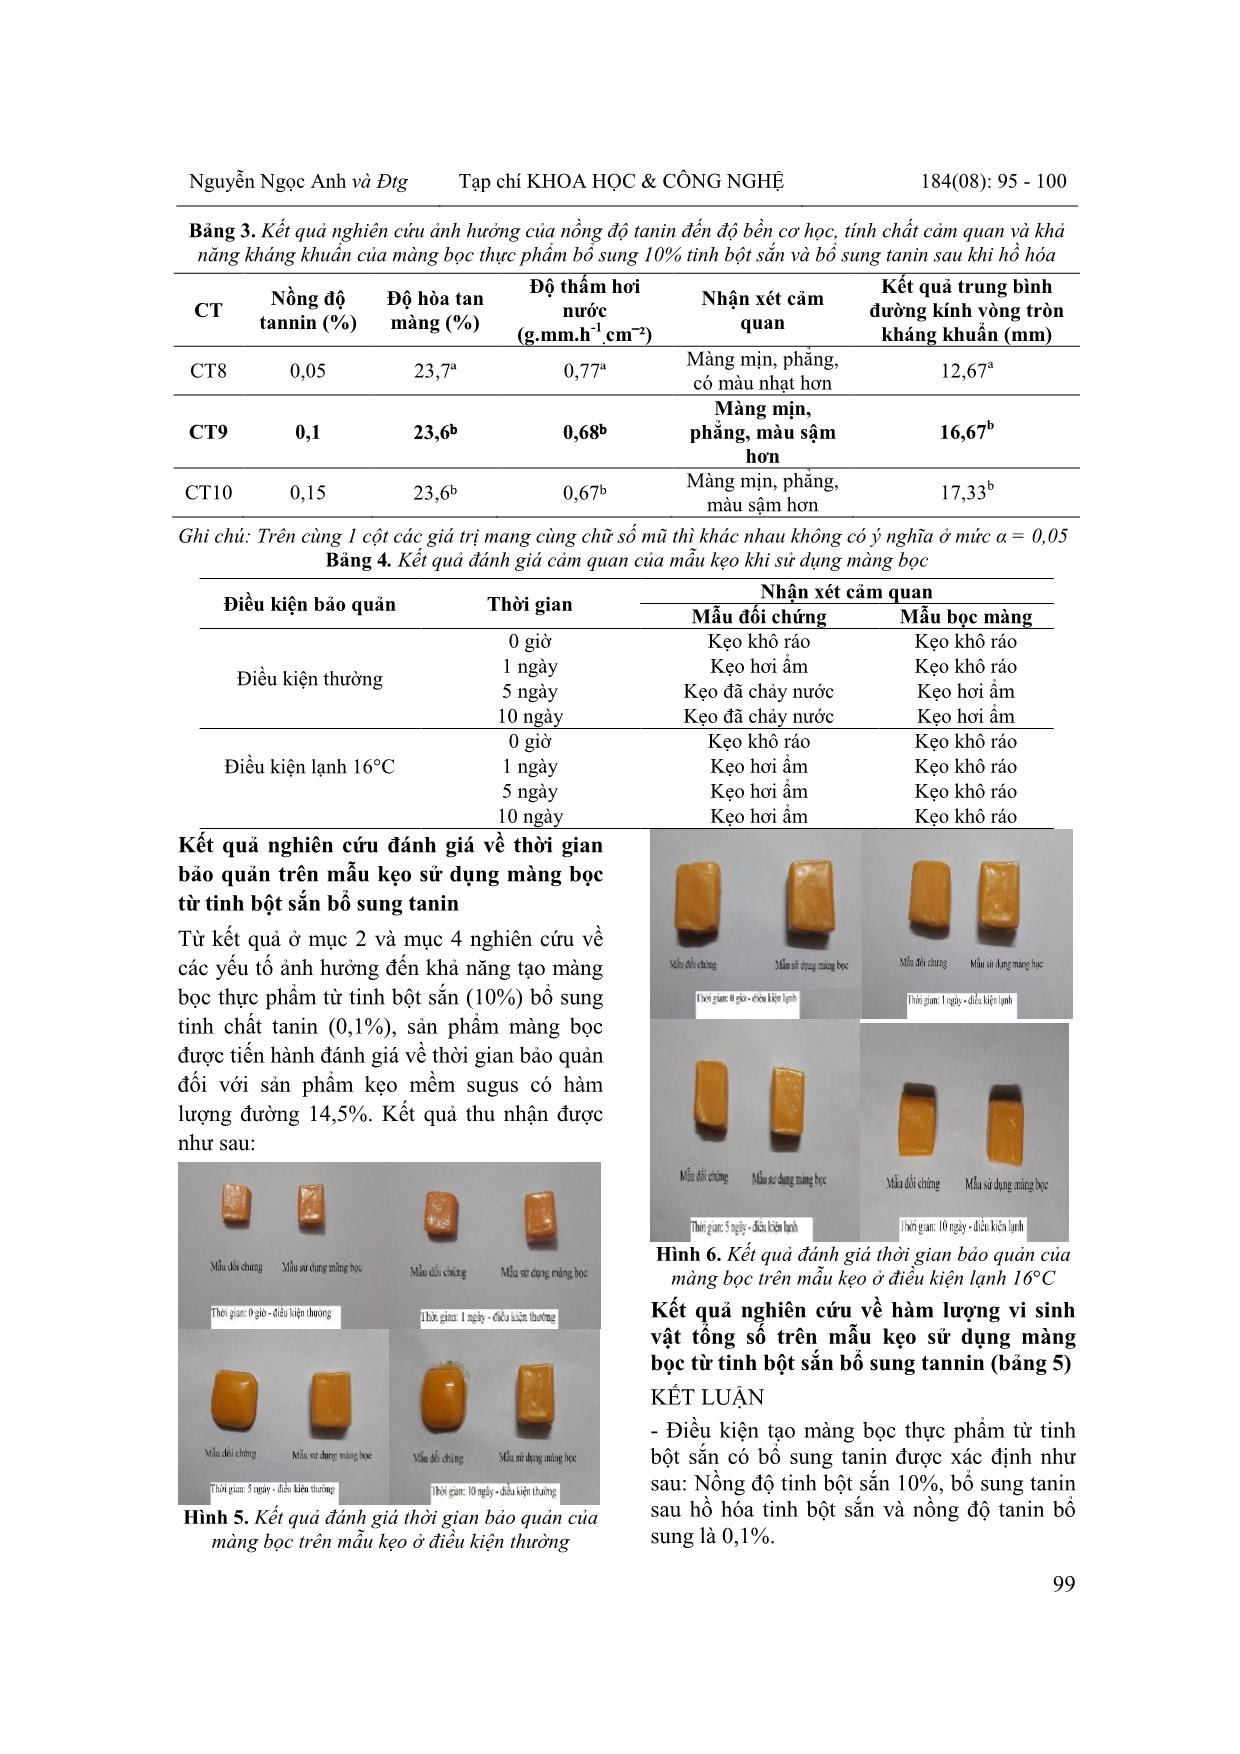 Nghiên cứu phương pháp chế tạo màng bọc thực phẩm từ tinh bột sắn có bổ sung tanin trang 5